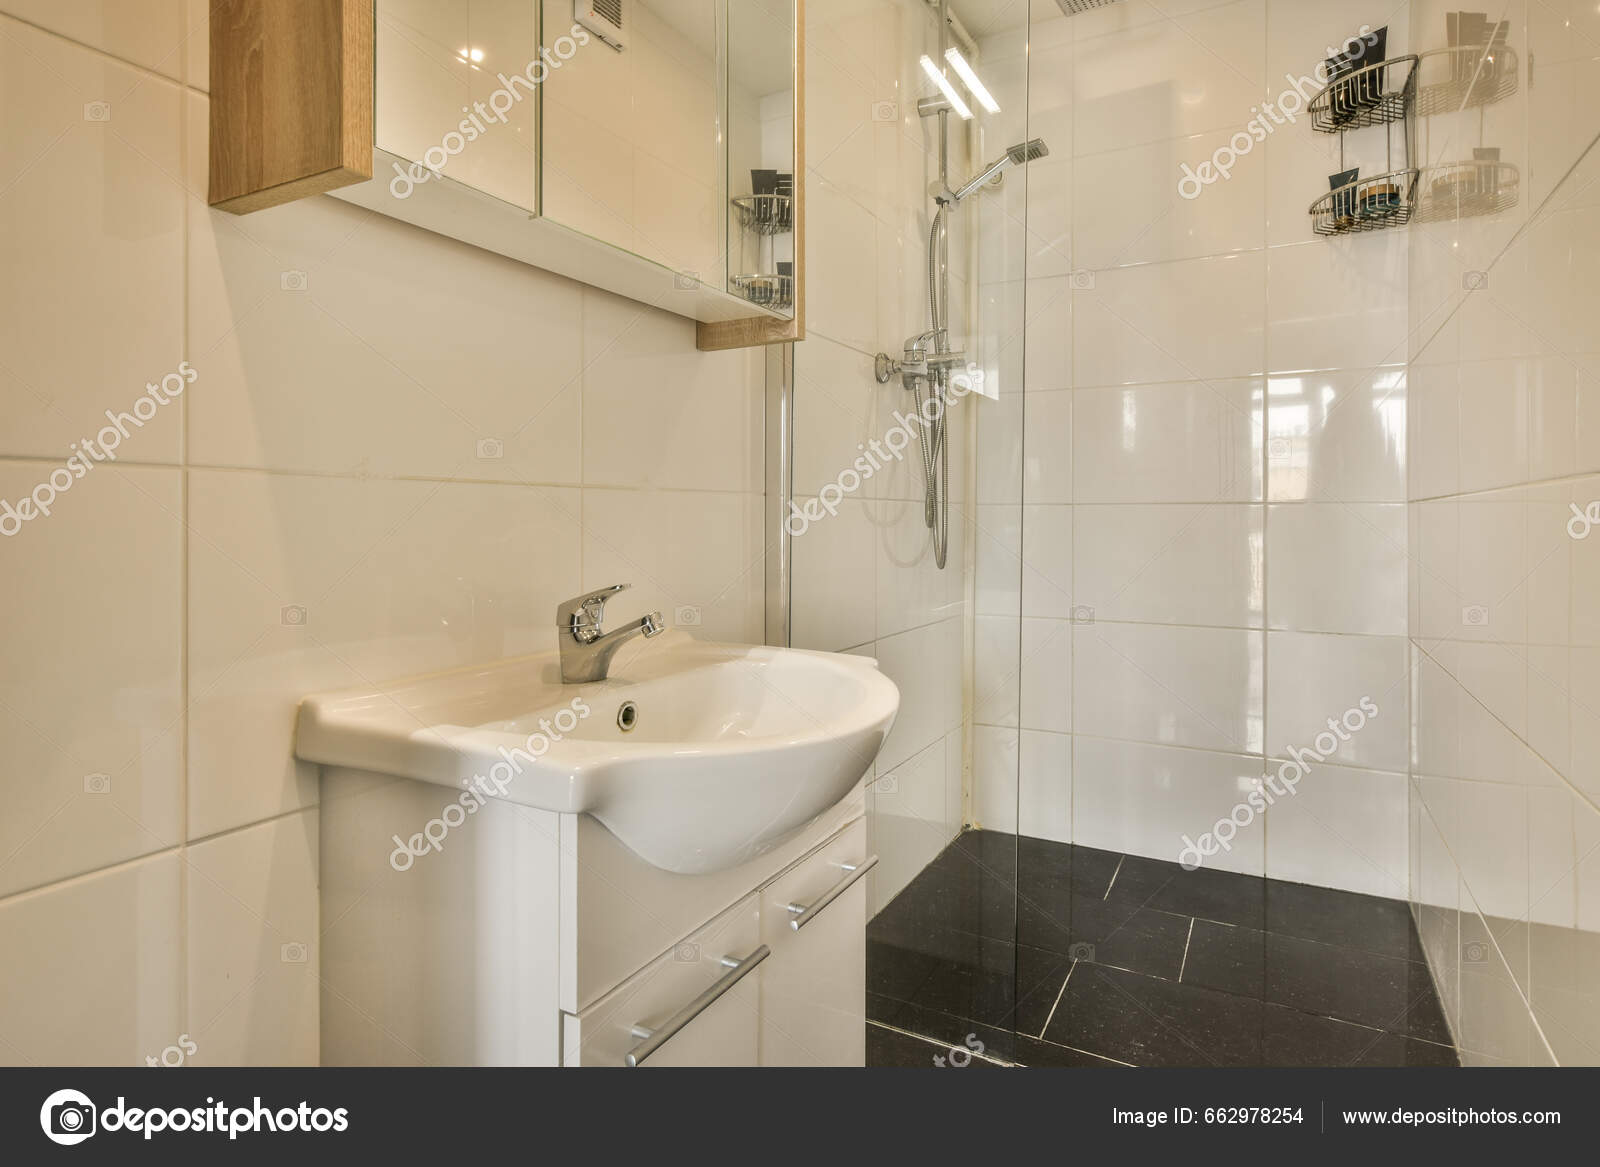 Lille Badeværelse Med Håndvask Spejl Vasken Ikke Brug Men Det — Stock-foto  © procontributors #662978254